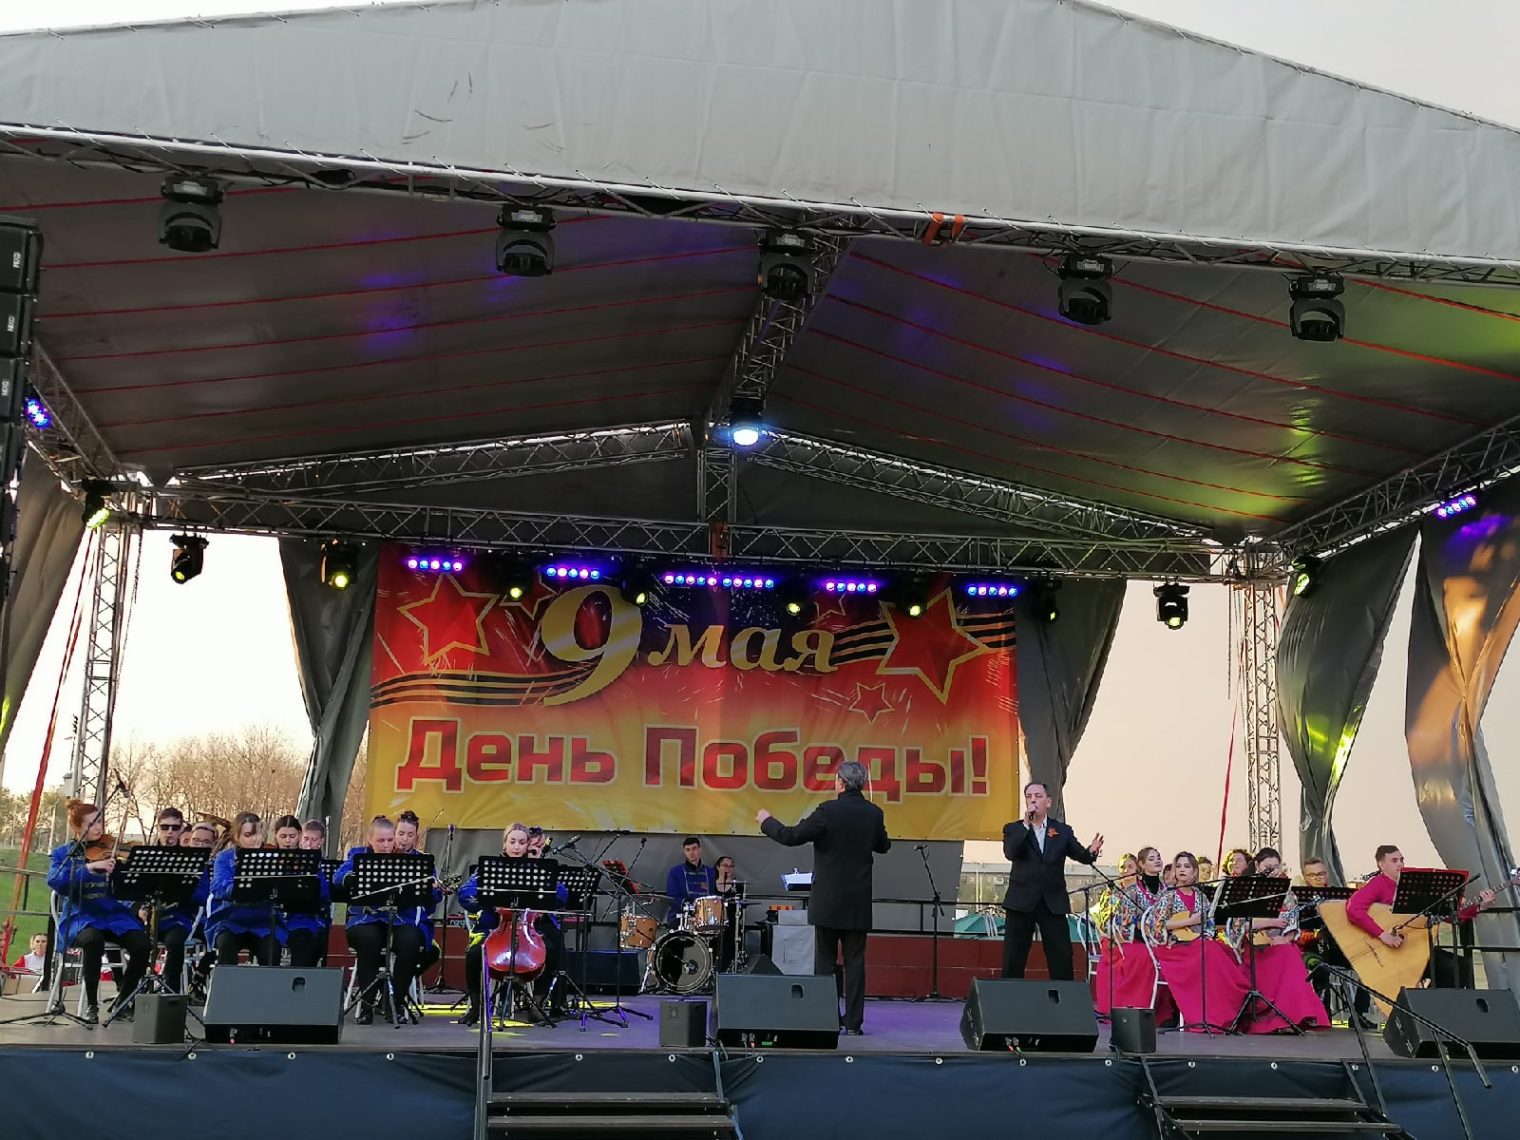 Их подвиги в песнях воспели. В Магнитогорске прошёл музыкальный фестиваль «Бал Победы»